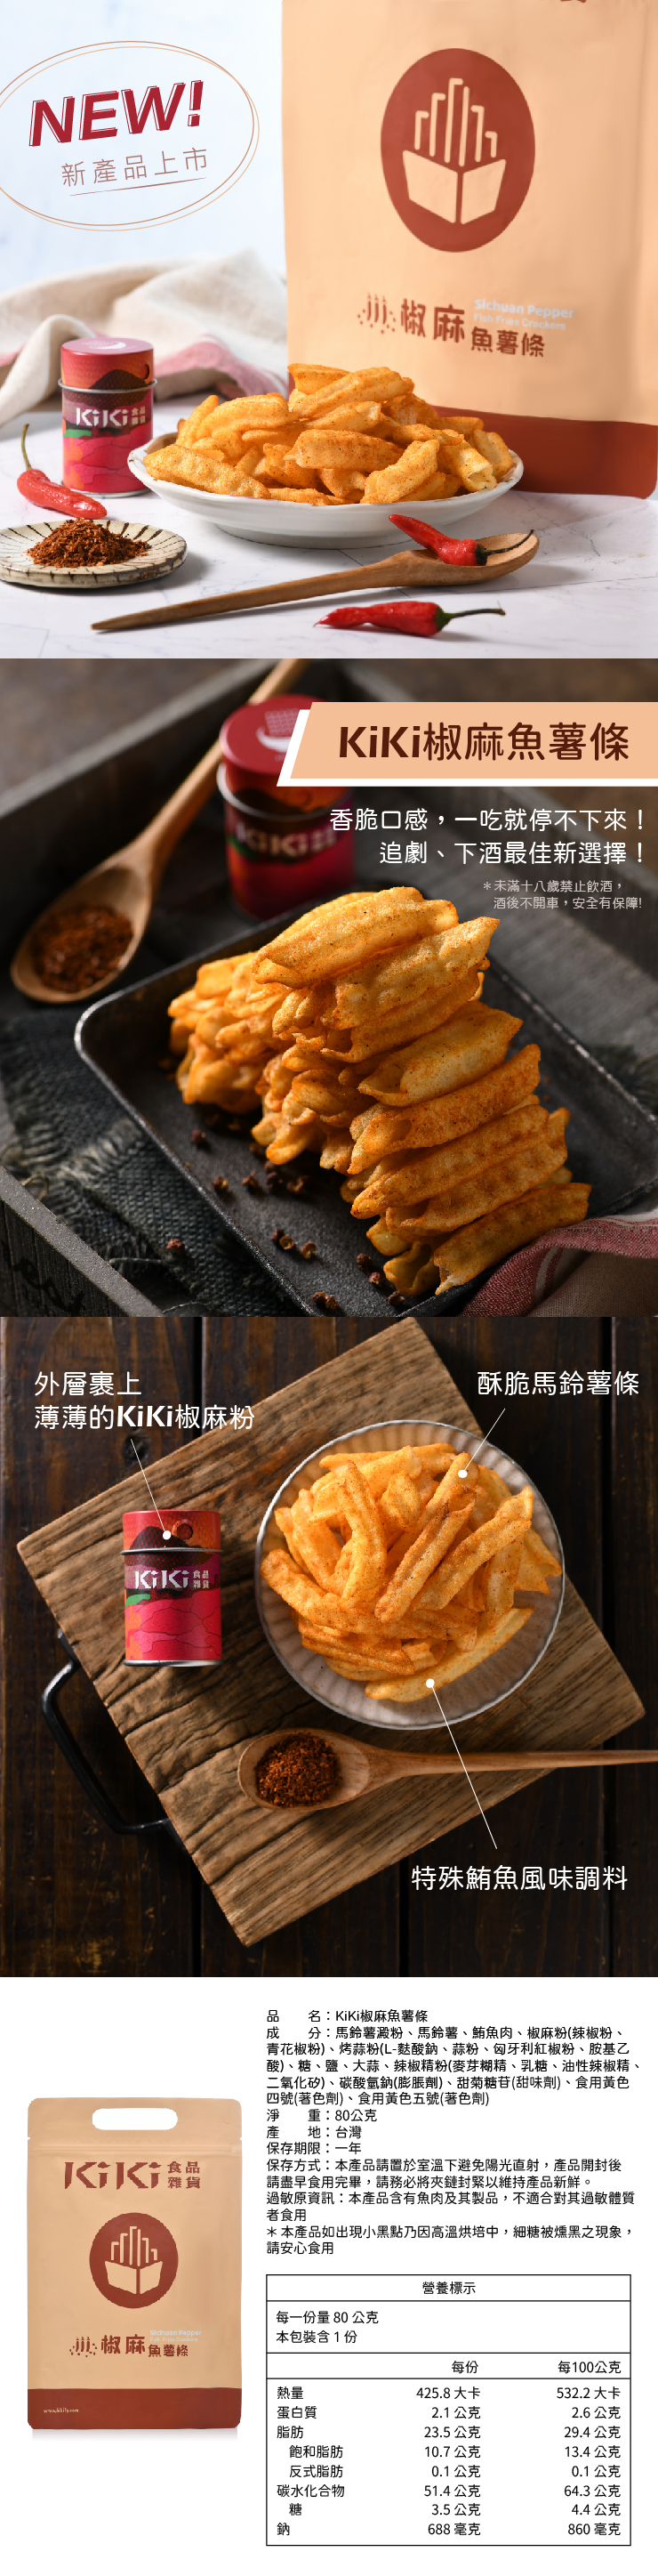 【KiKi食品雜貨】舒淇最愛經典拌麵(5包/袋) 限時加贈椒麻魚薯條